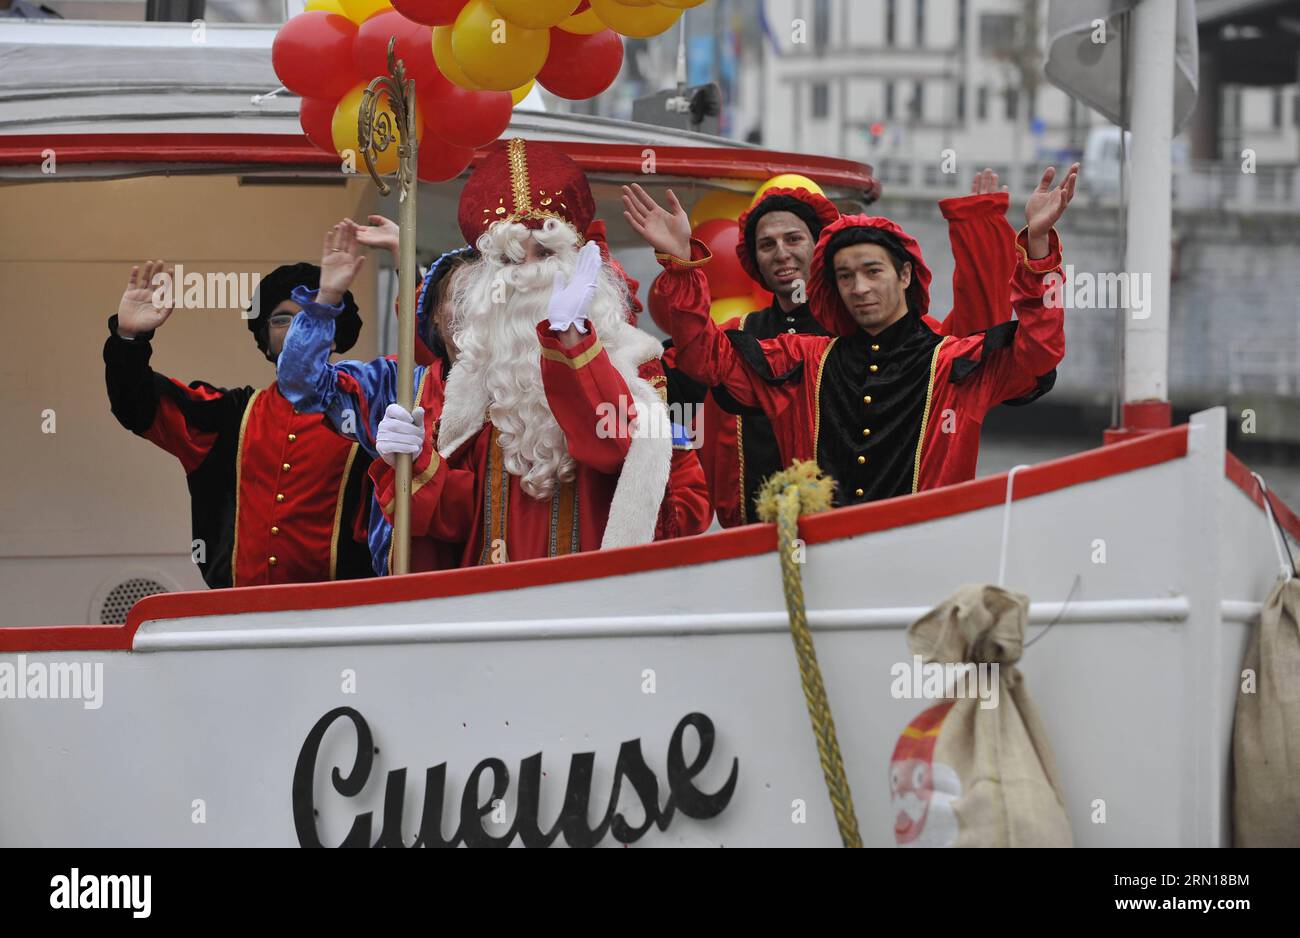 (141205) -- BRÜSSEL, 5. Dezember 2014 -- Saint-Nicolas (Sinterklaas) und seine Helfer kommen am 5. Dezember 2014 mit dem Boot nach Brüssel. Saint-Nicolas, der eine der Quellen der beliebten Weihnachtsfigur des Weihnachtsmanns ist, wird jährlich mit Geschenken in der Nacht vor oder am Heiligen Nikolaus-Tag am 6. Dezember in Belgien gefeiert. ) BELGIEN-BRÜSSEL-SAINT NICOLAS YexPingfan PUBLICATIONxNOTxINxCHN Brüssel DEC 5 2014 Saint Nicolas und seine Helfer kommen mit dem Boot DEC 5 2014 Saint Nicolas IN Brüssel an, der eine der Quellen der beliebten Weihnachtsmarke Santa Clau IST Stockfoto